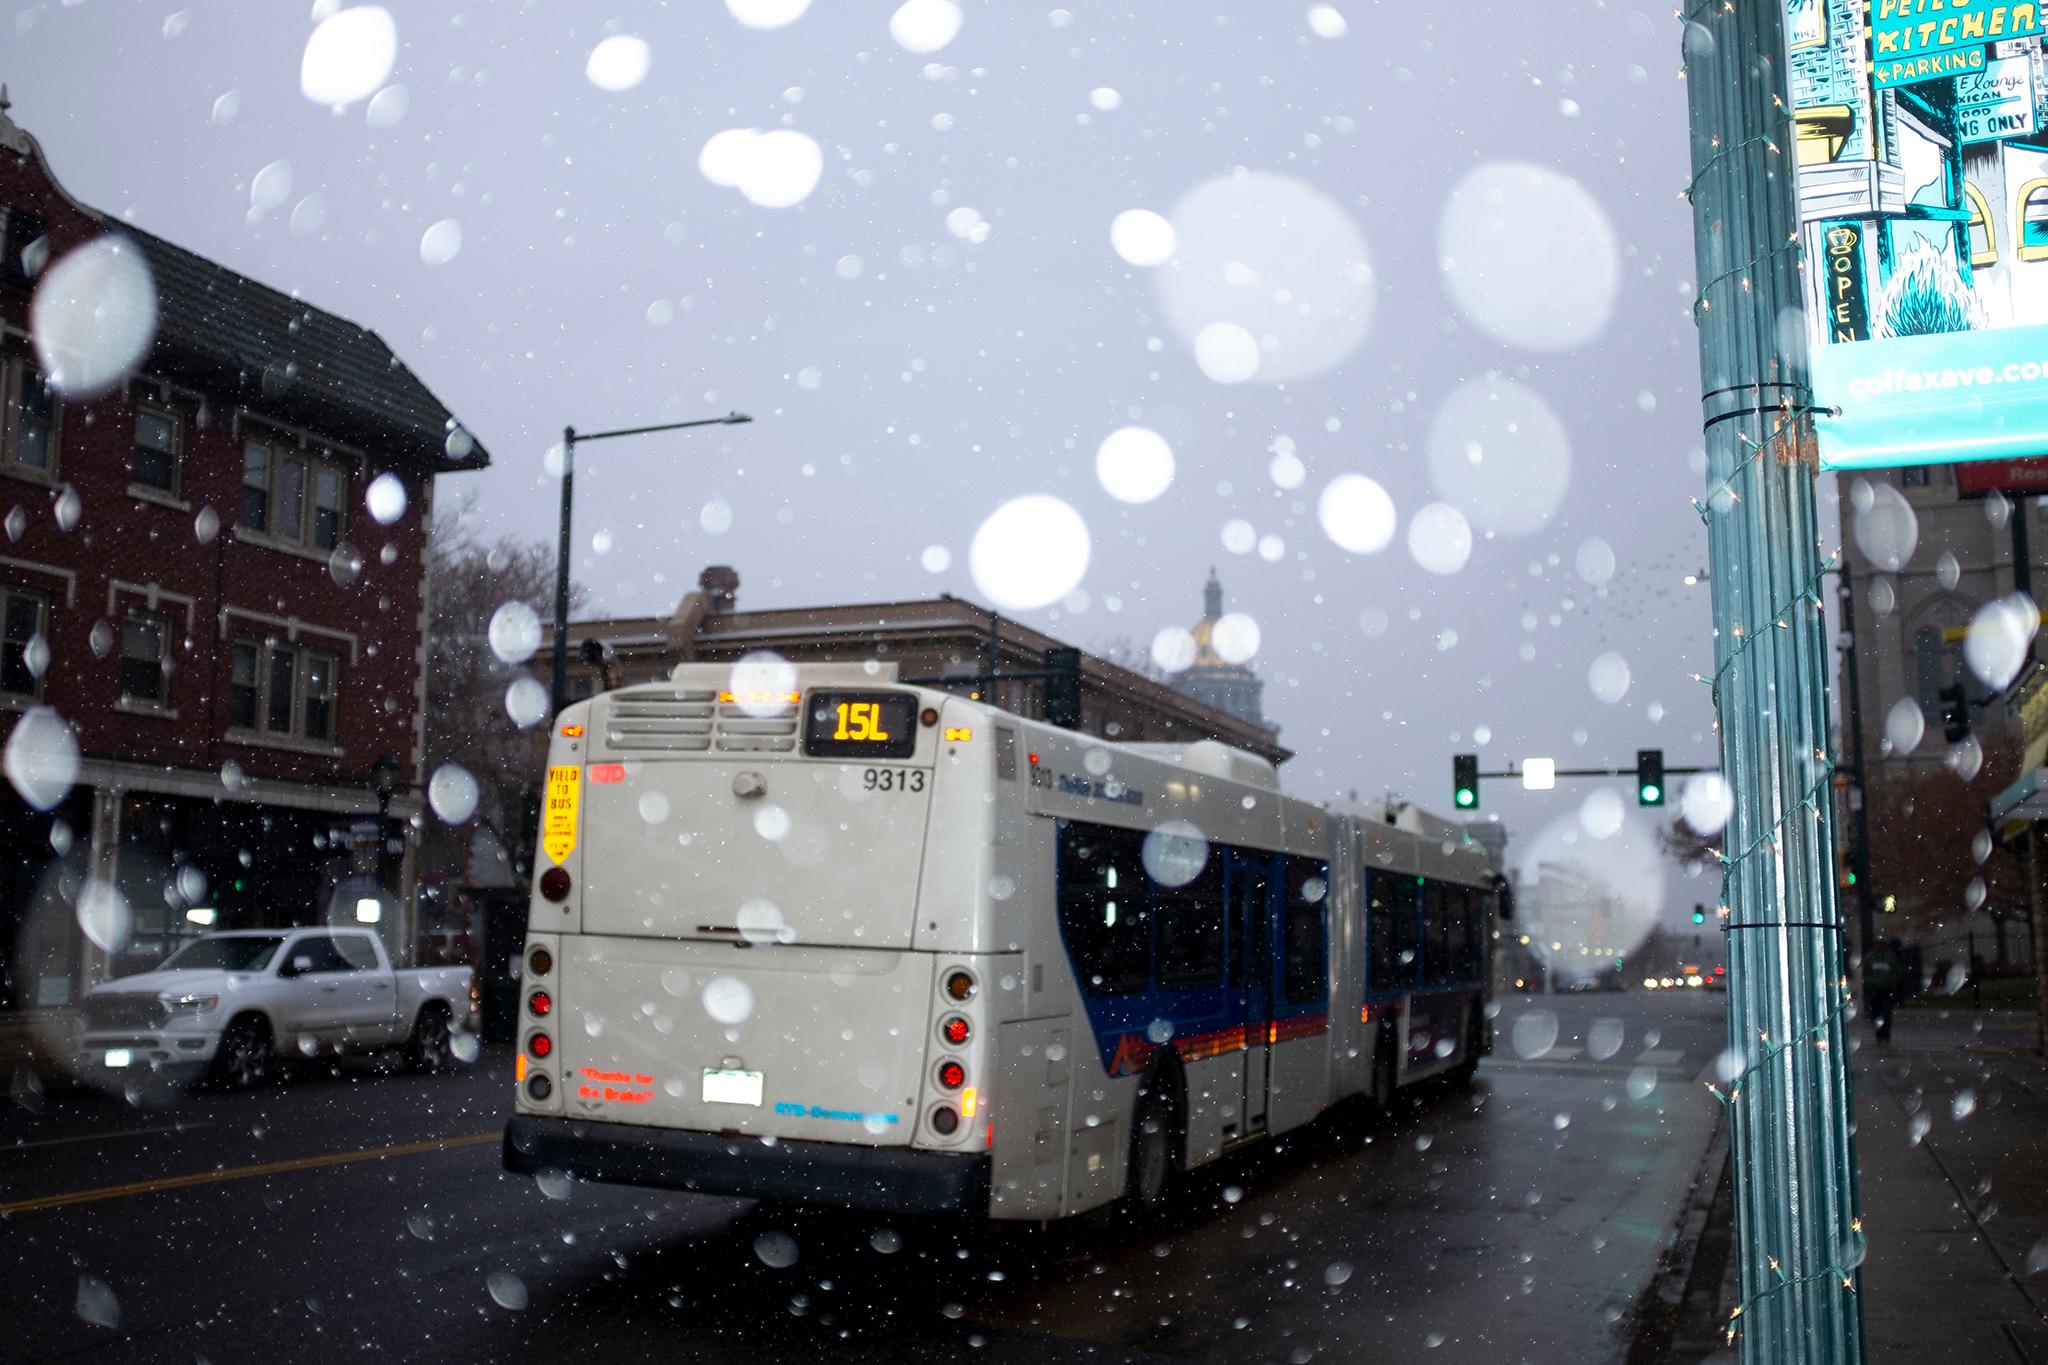 A cold RTD bus on Colfax Avenue. Nov. 25, 2019. (Kevin J. Beaty/Denverite)